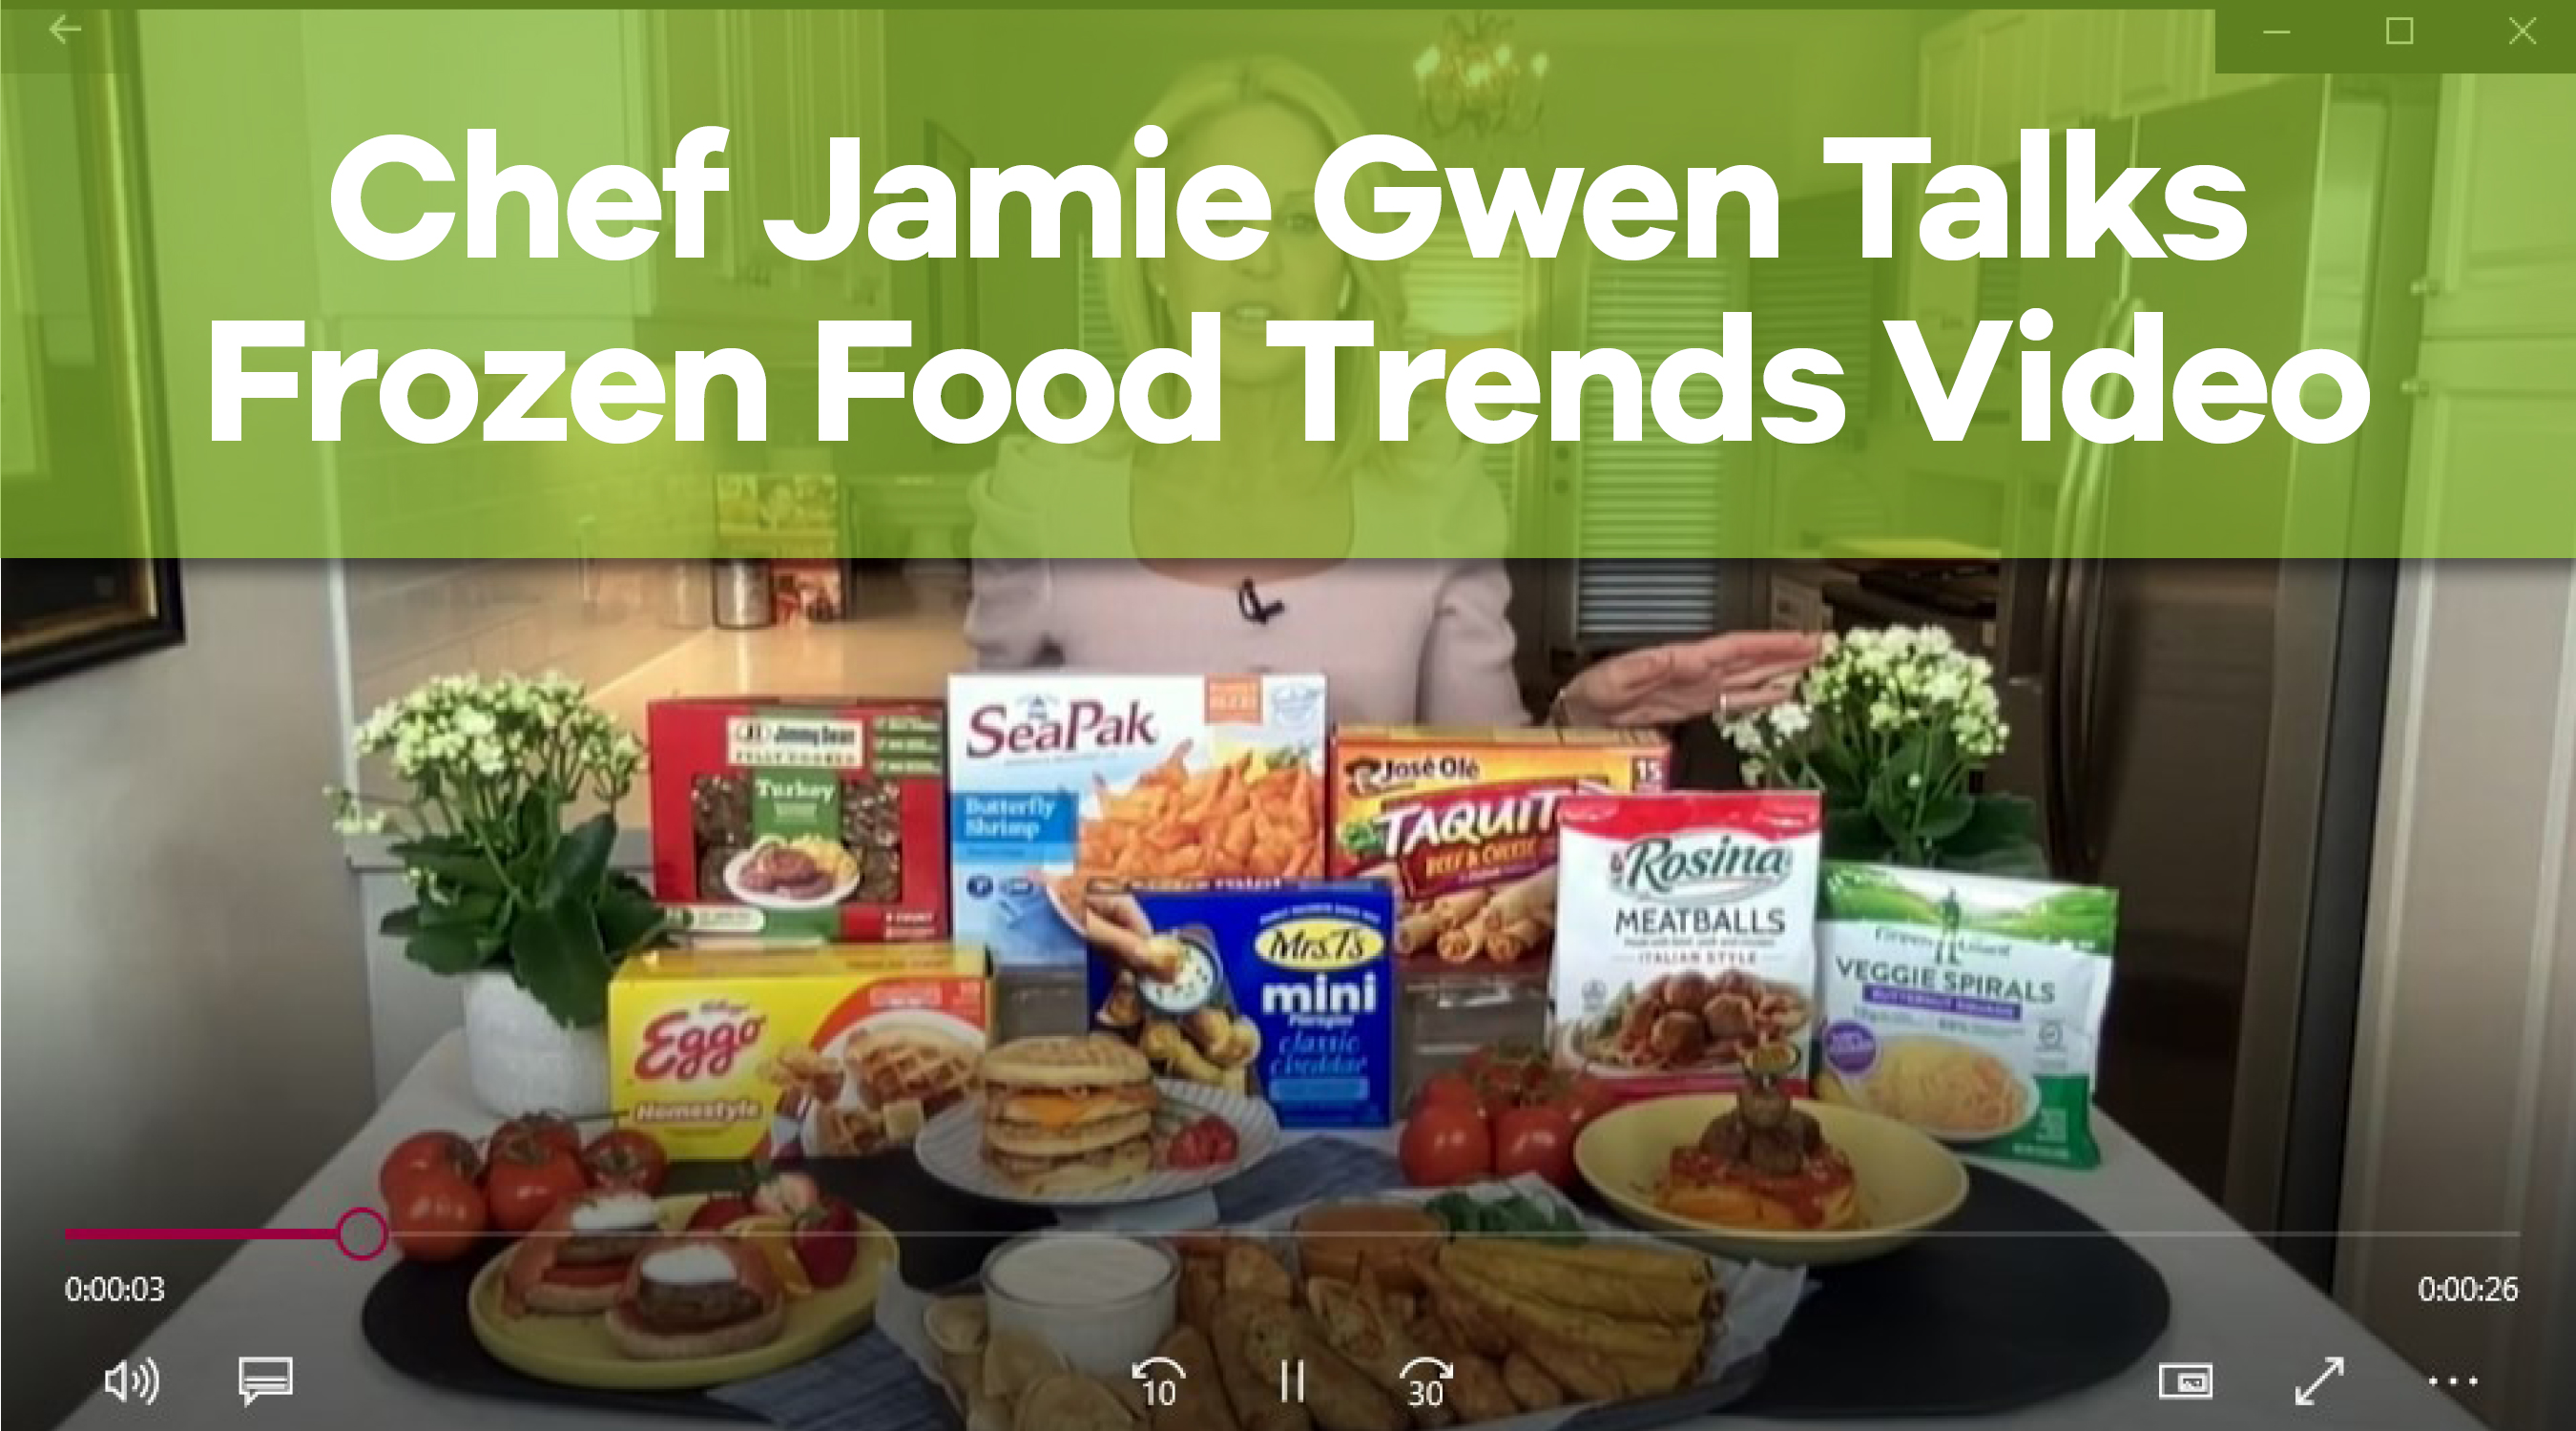 Play Video: Chef Jamie Gwen Talks Frozen Food Trends